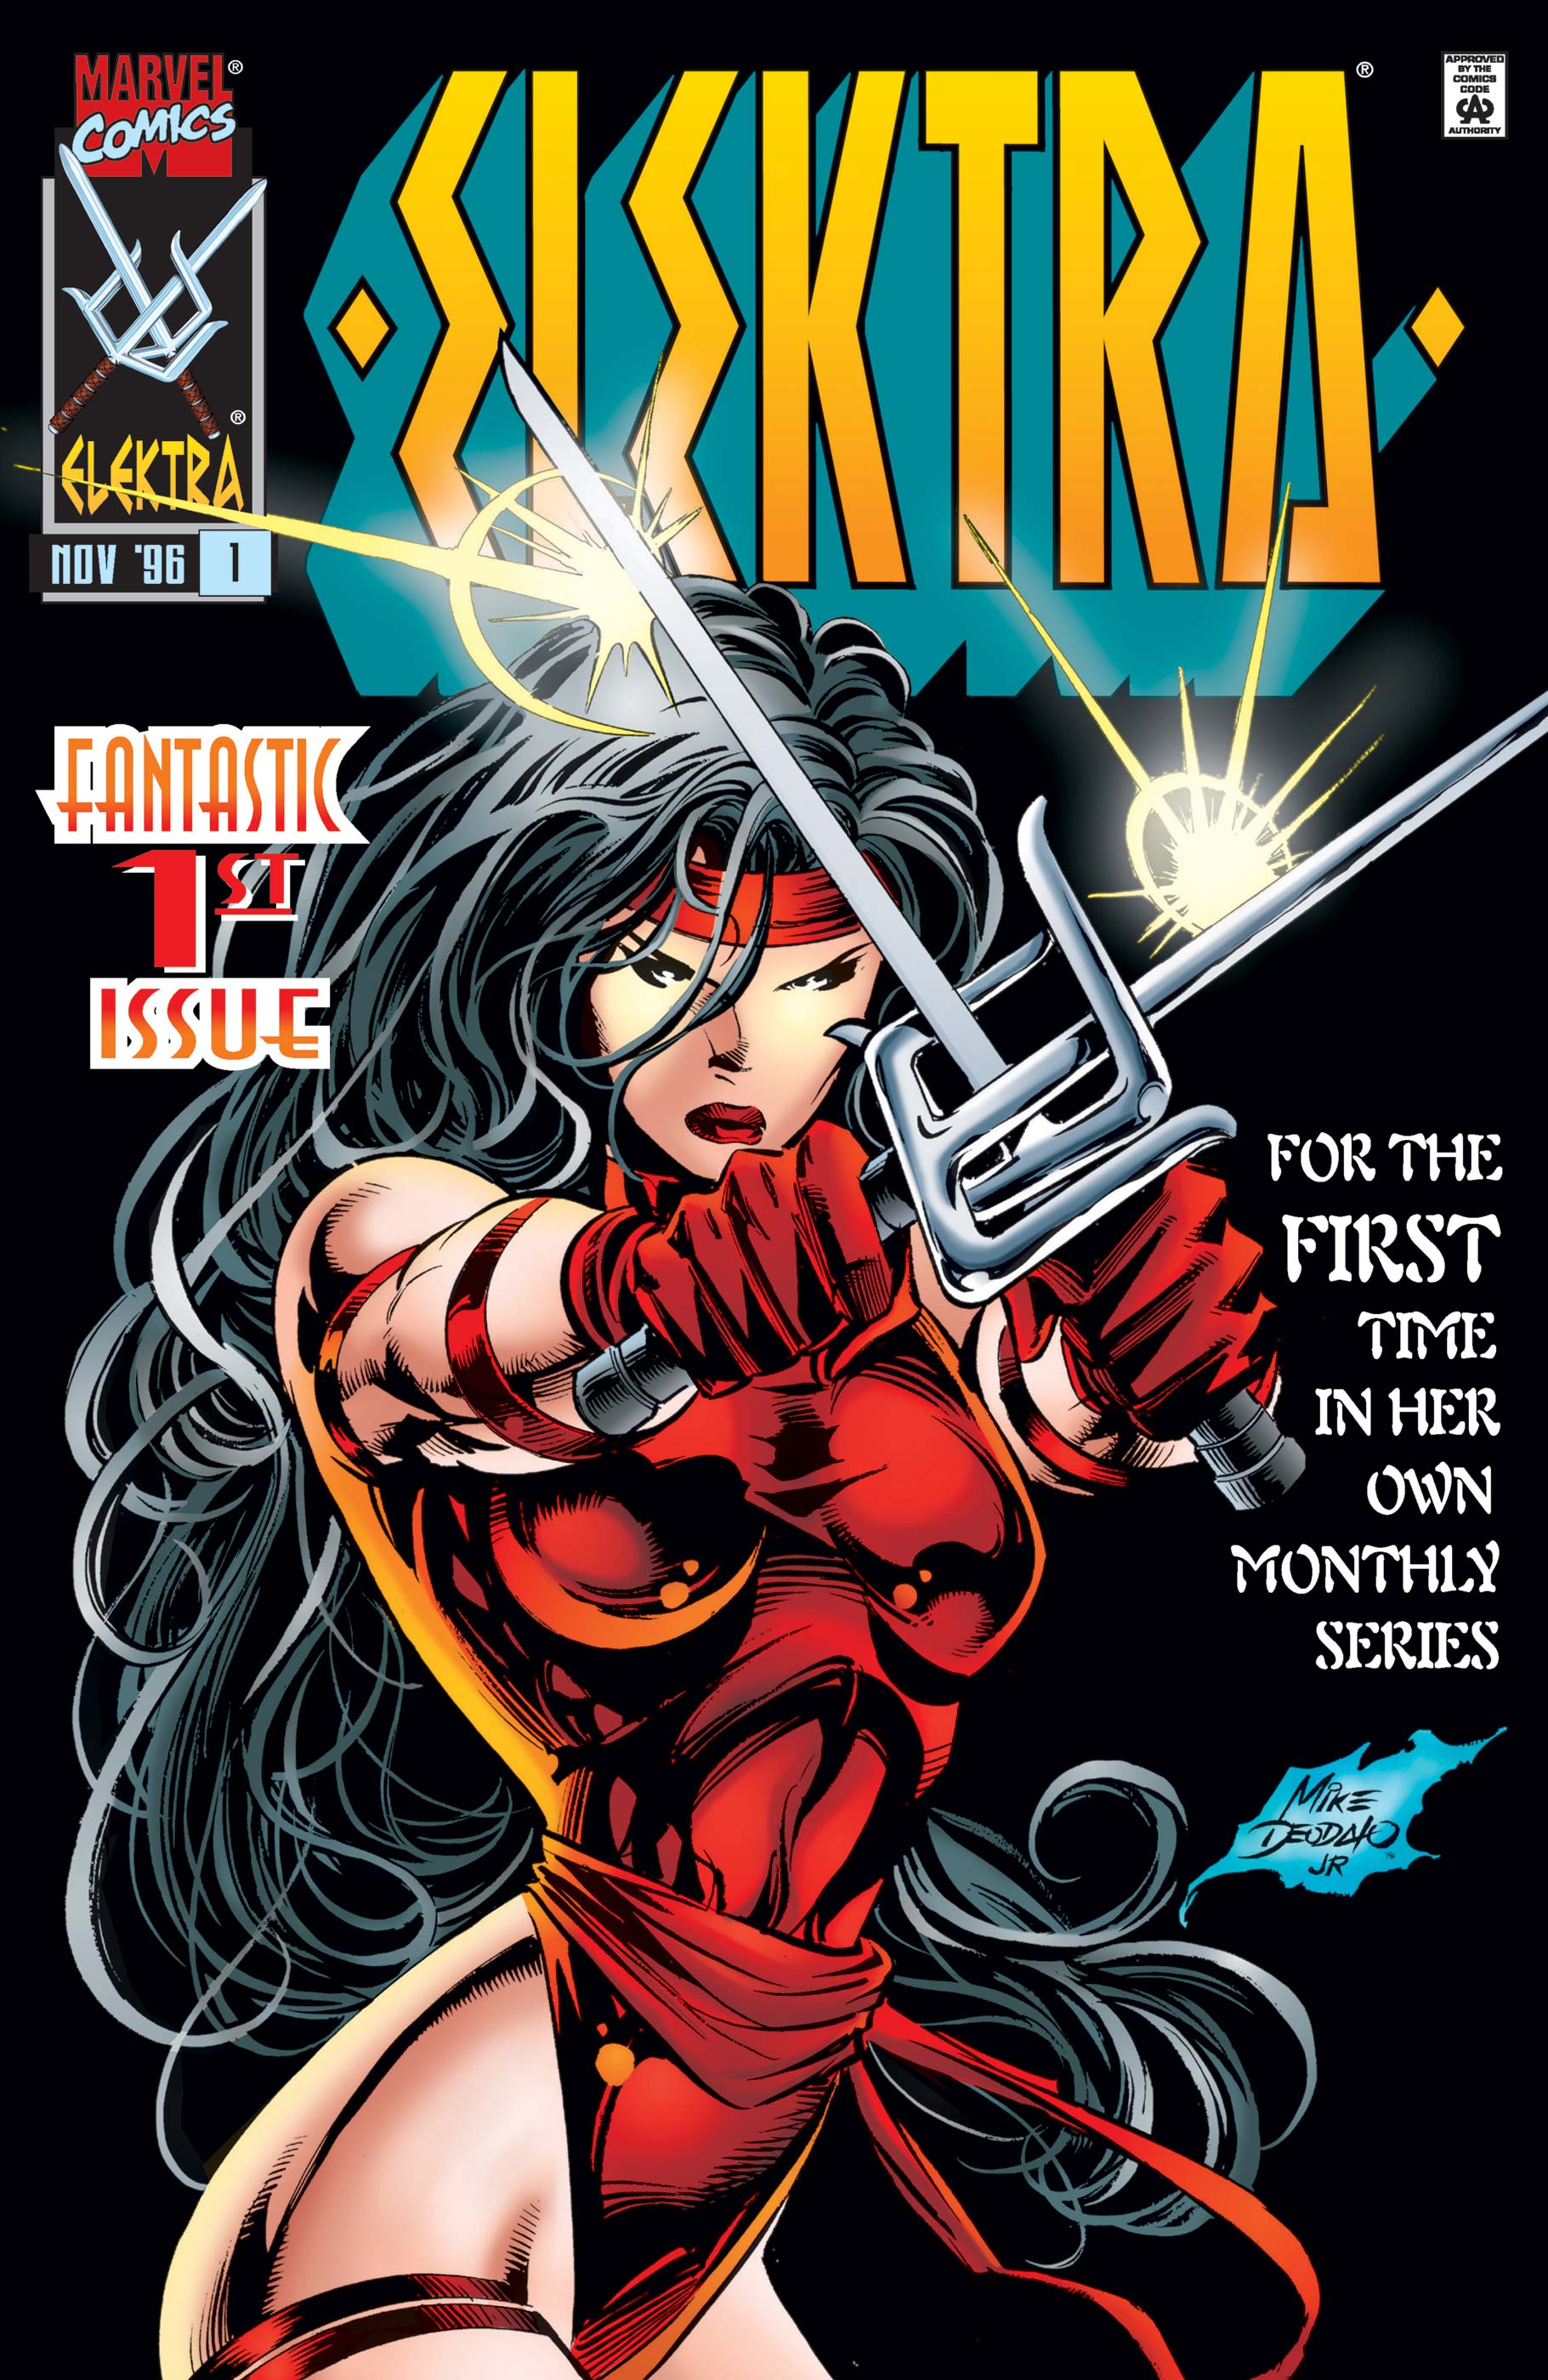 Elektra comics